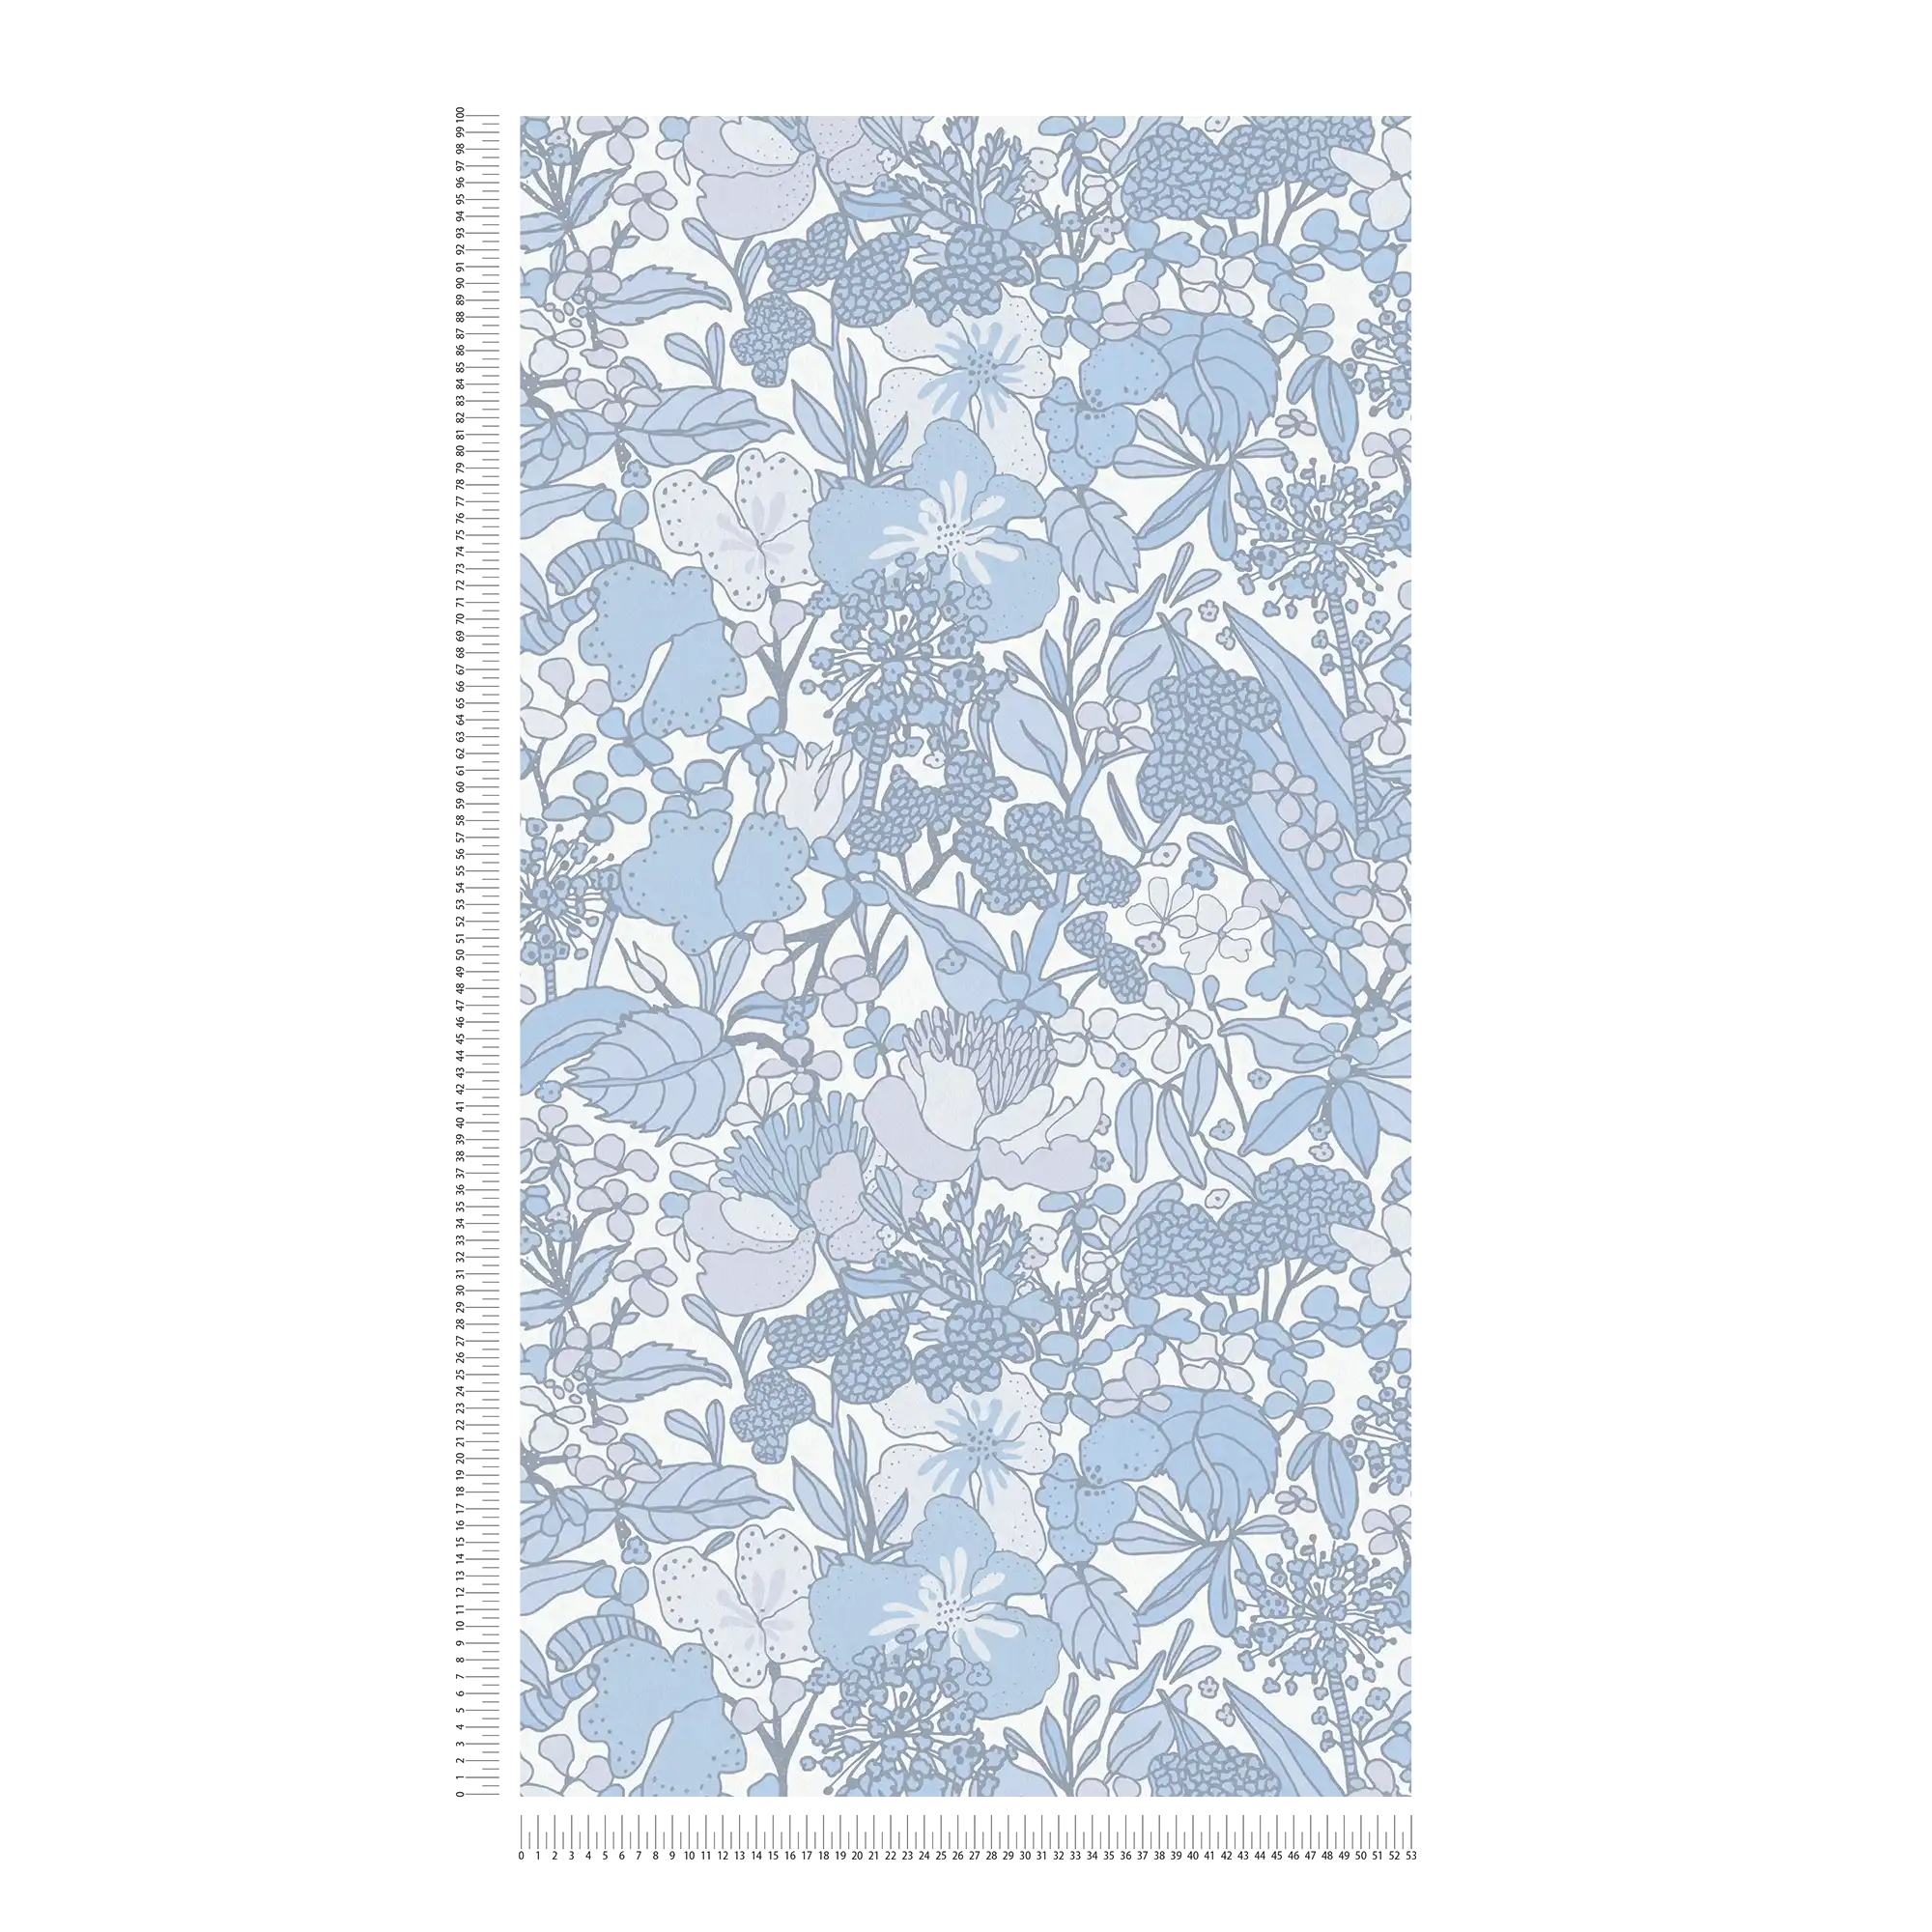             Papier peint bleu et blanc avec motif floral rétro des années 70 - gris, bleu, blanc
        